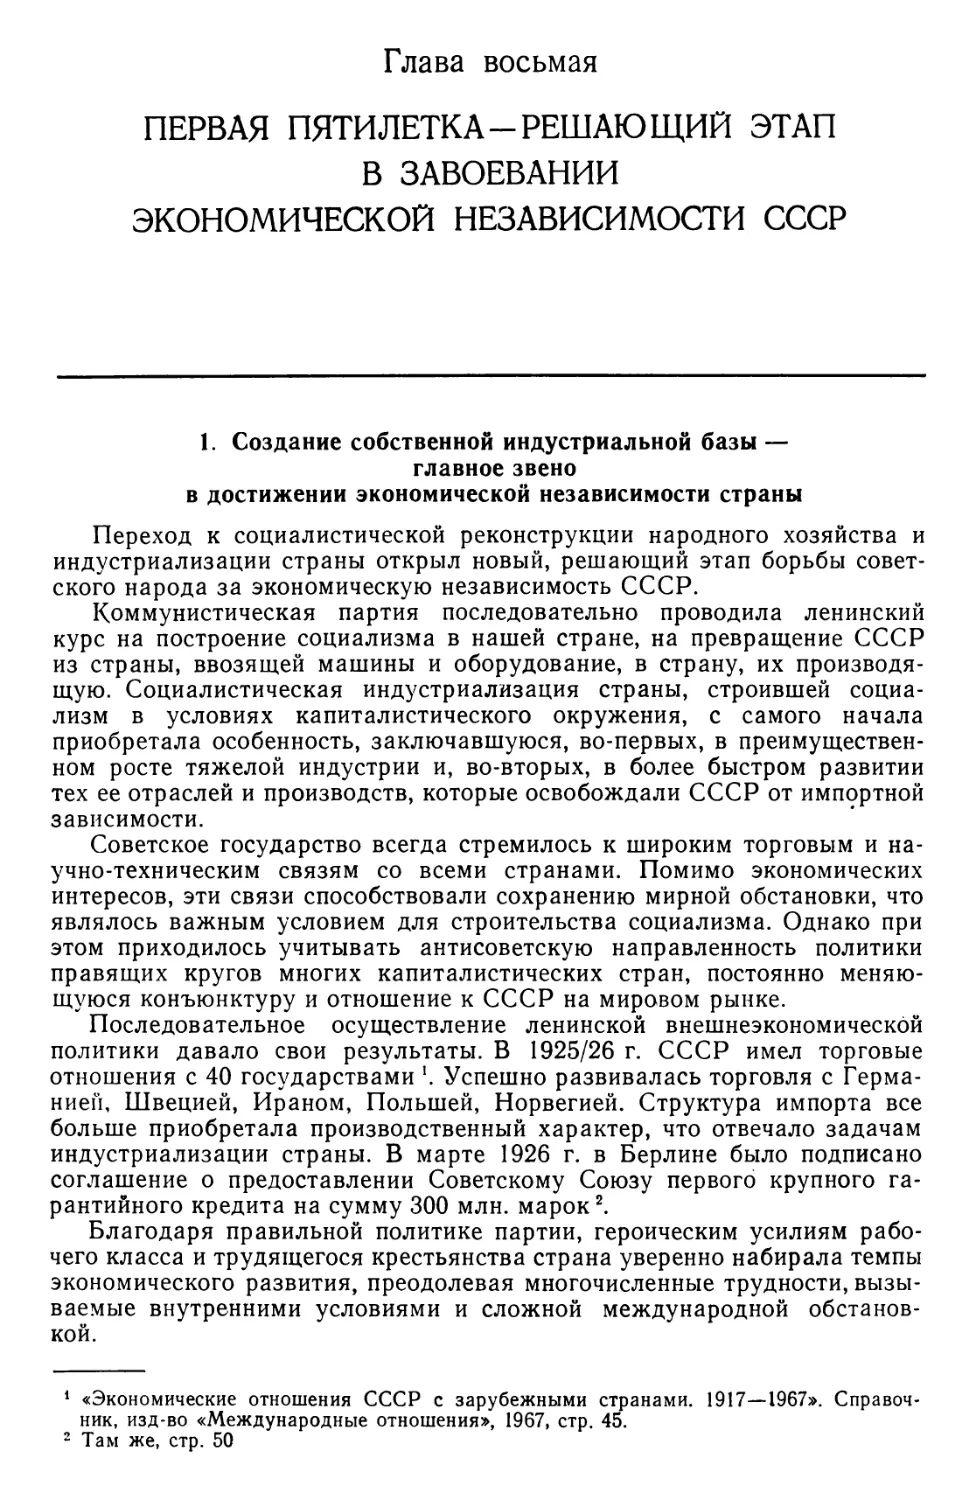 Глава 8. Первая пятилетка — решающий этап в завоевании экономической независимости СССР